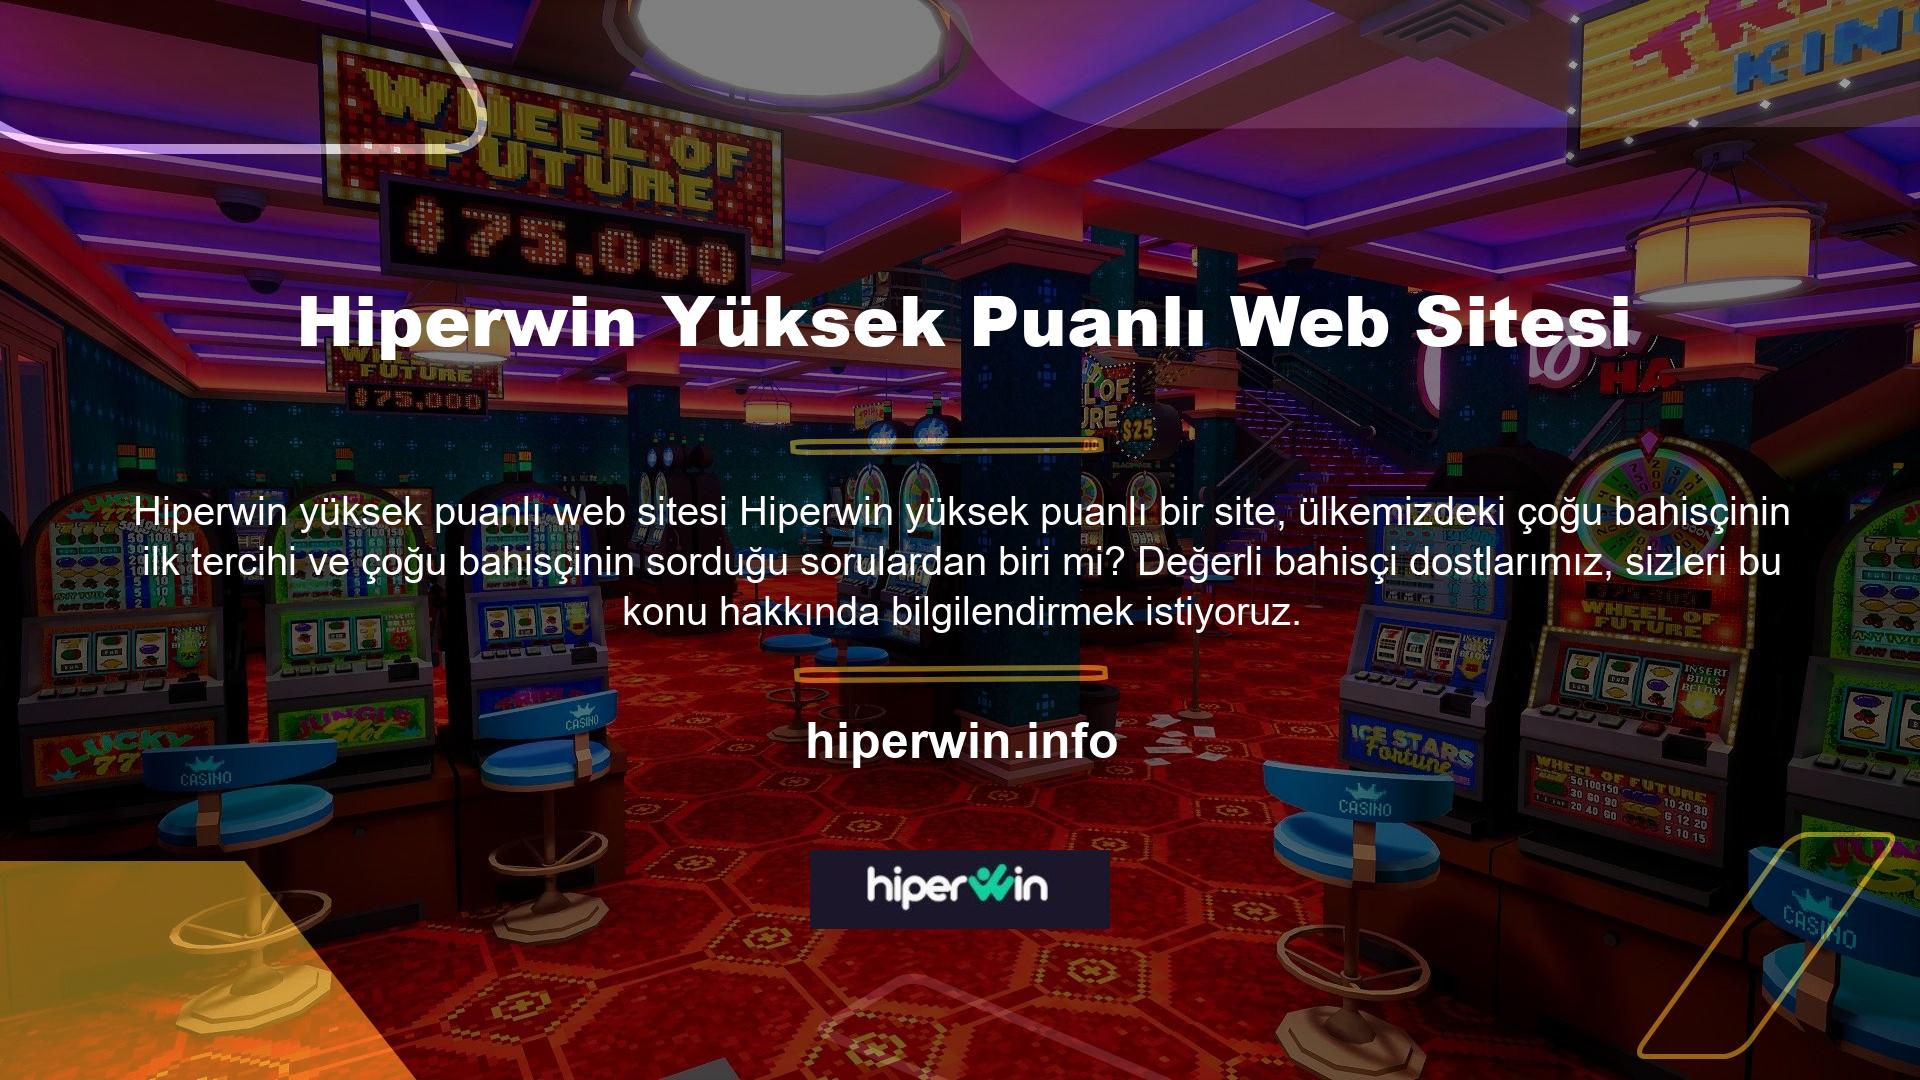 Avrupa bahis sitelerinden biri olan Hiperwin, özellikle son yıllarda ülkemizde de en popüler bahis sitelerinden biri haline gelmiştir